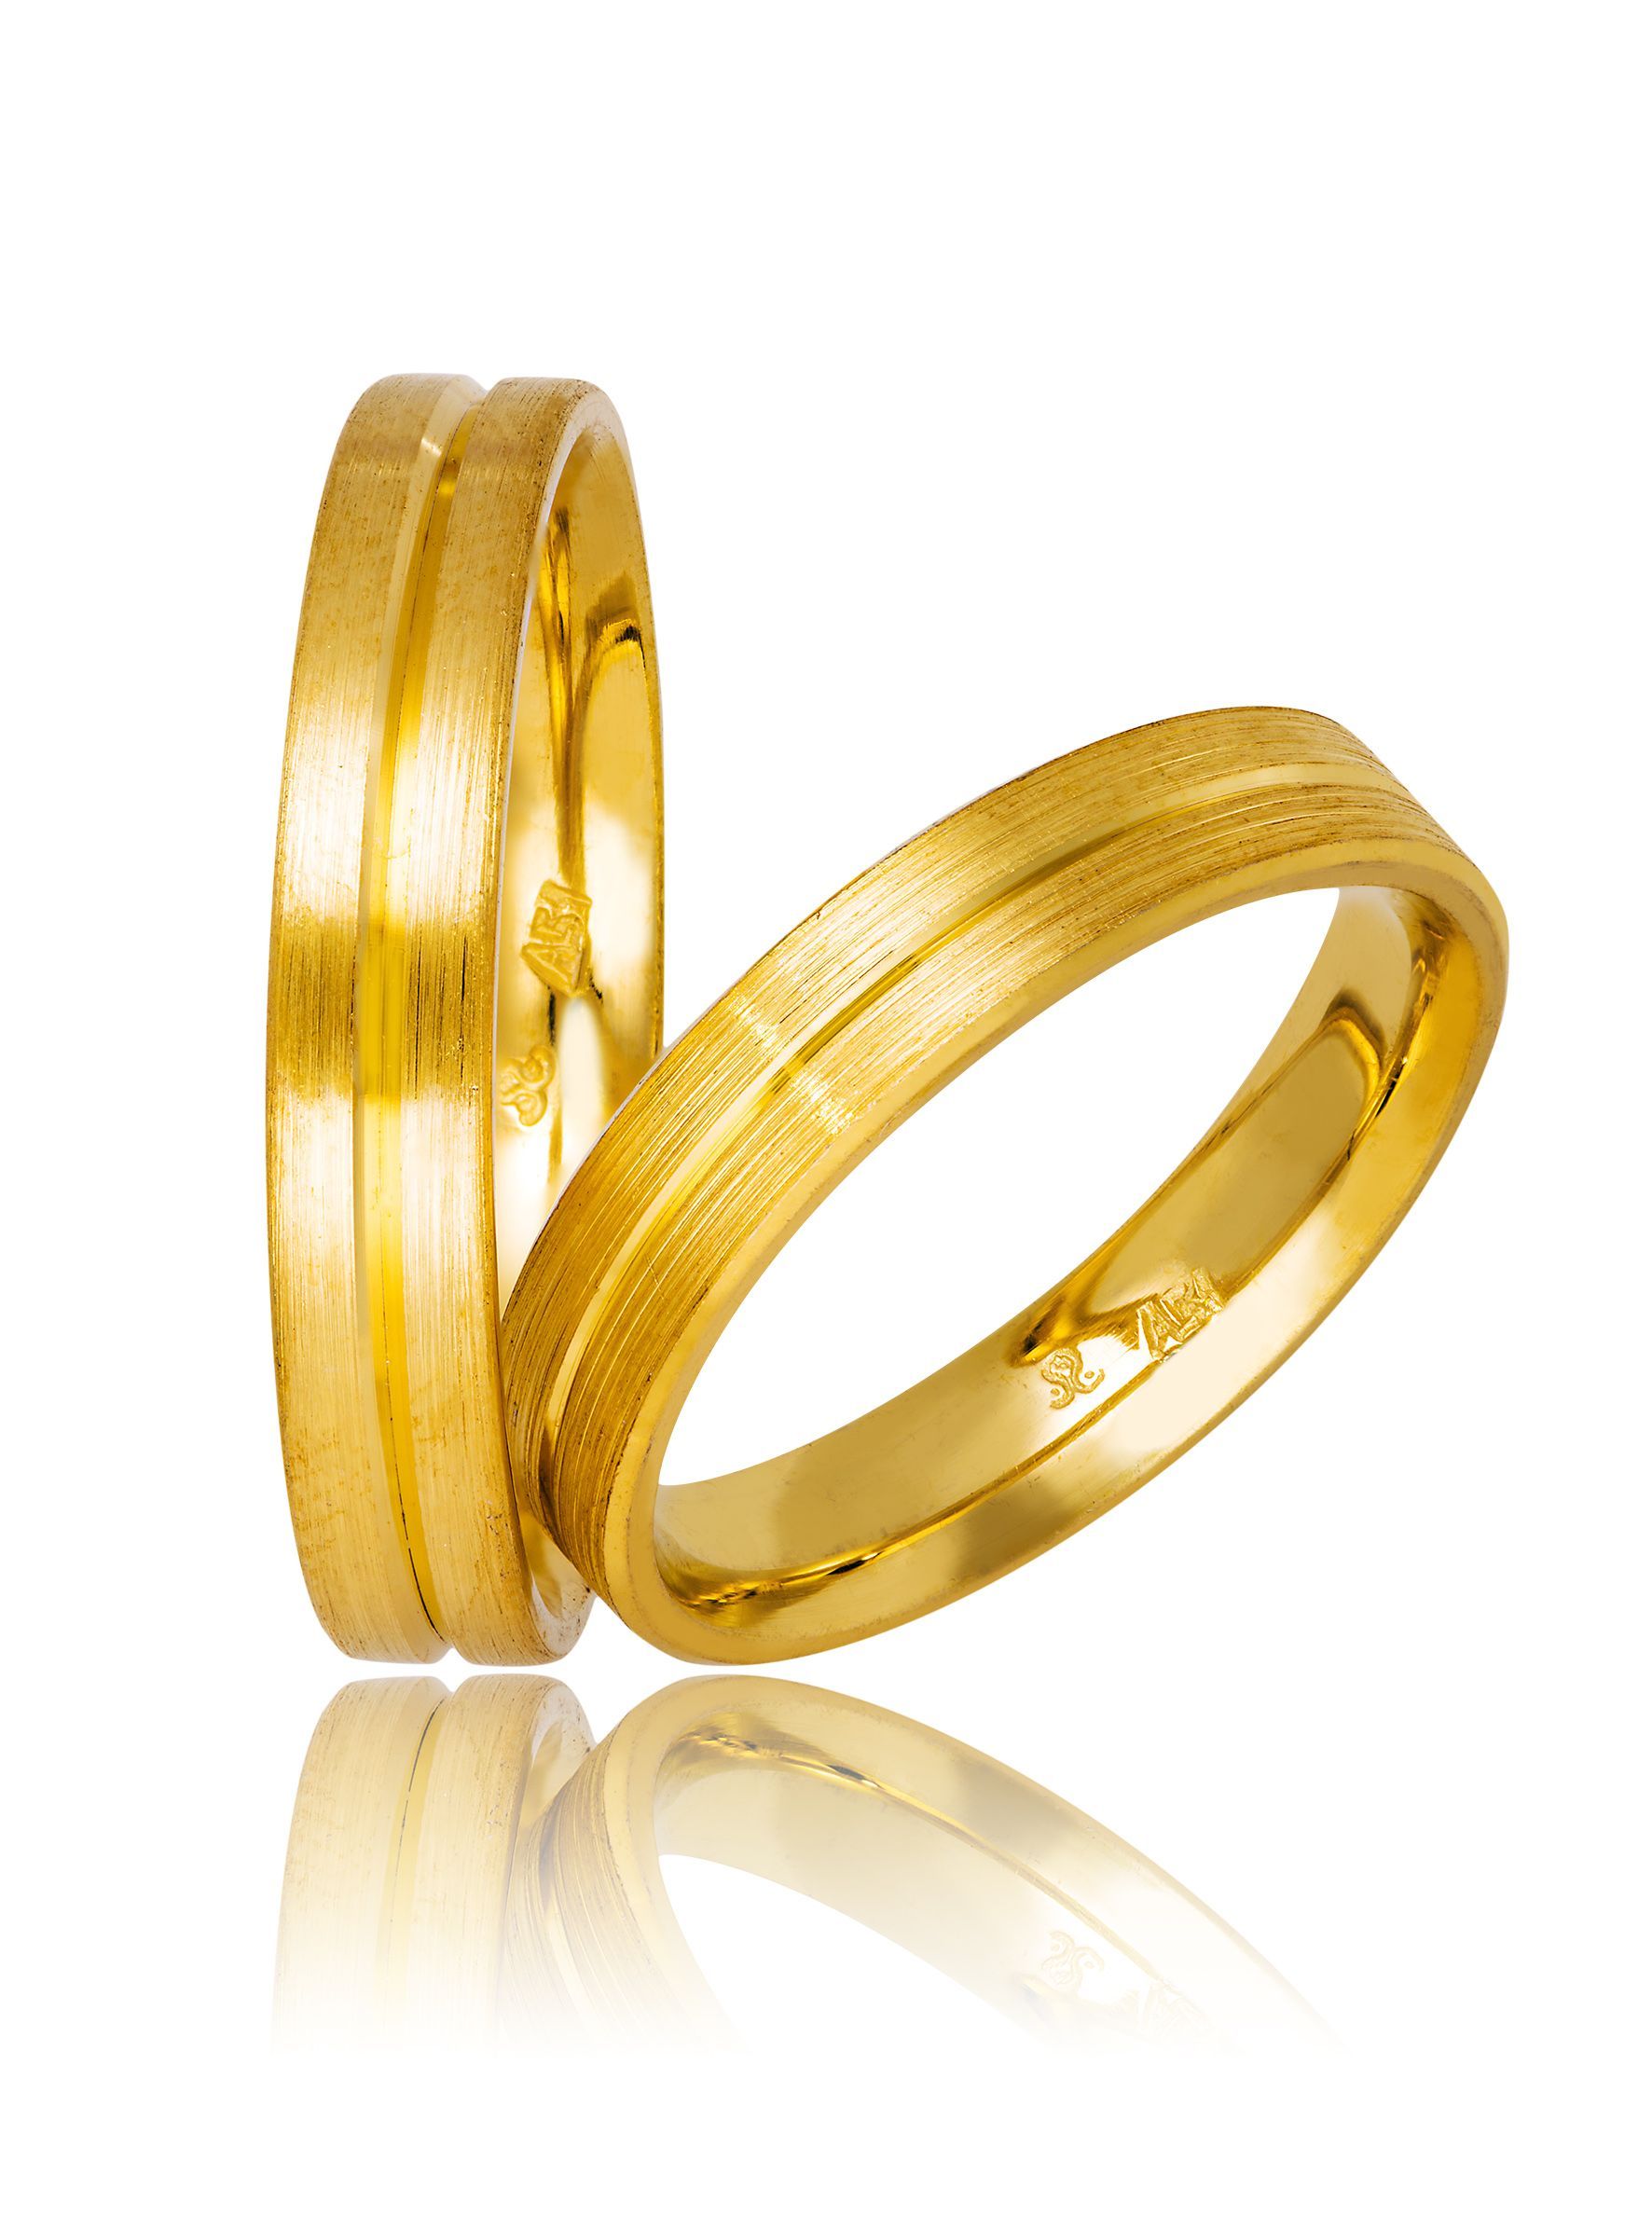 Golden wedding rings 4mm (code 736)